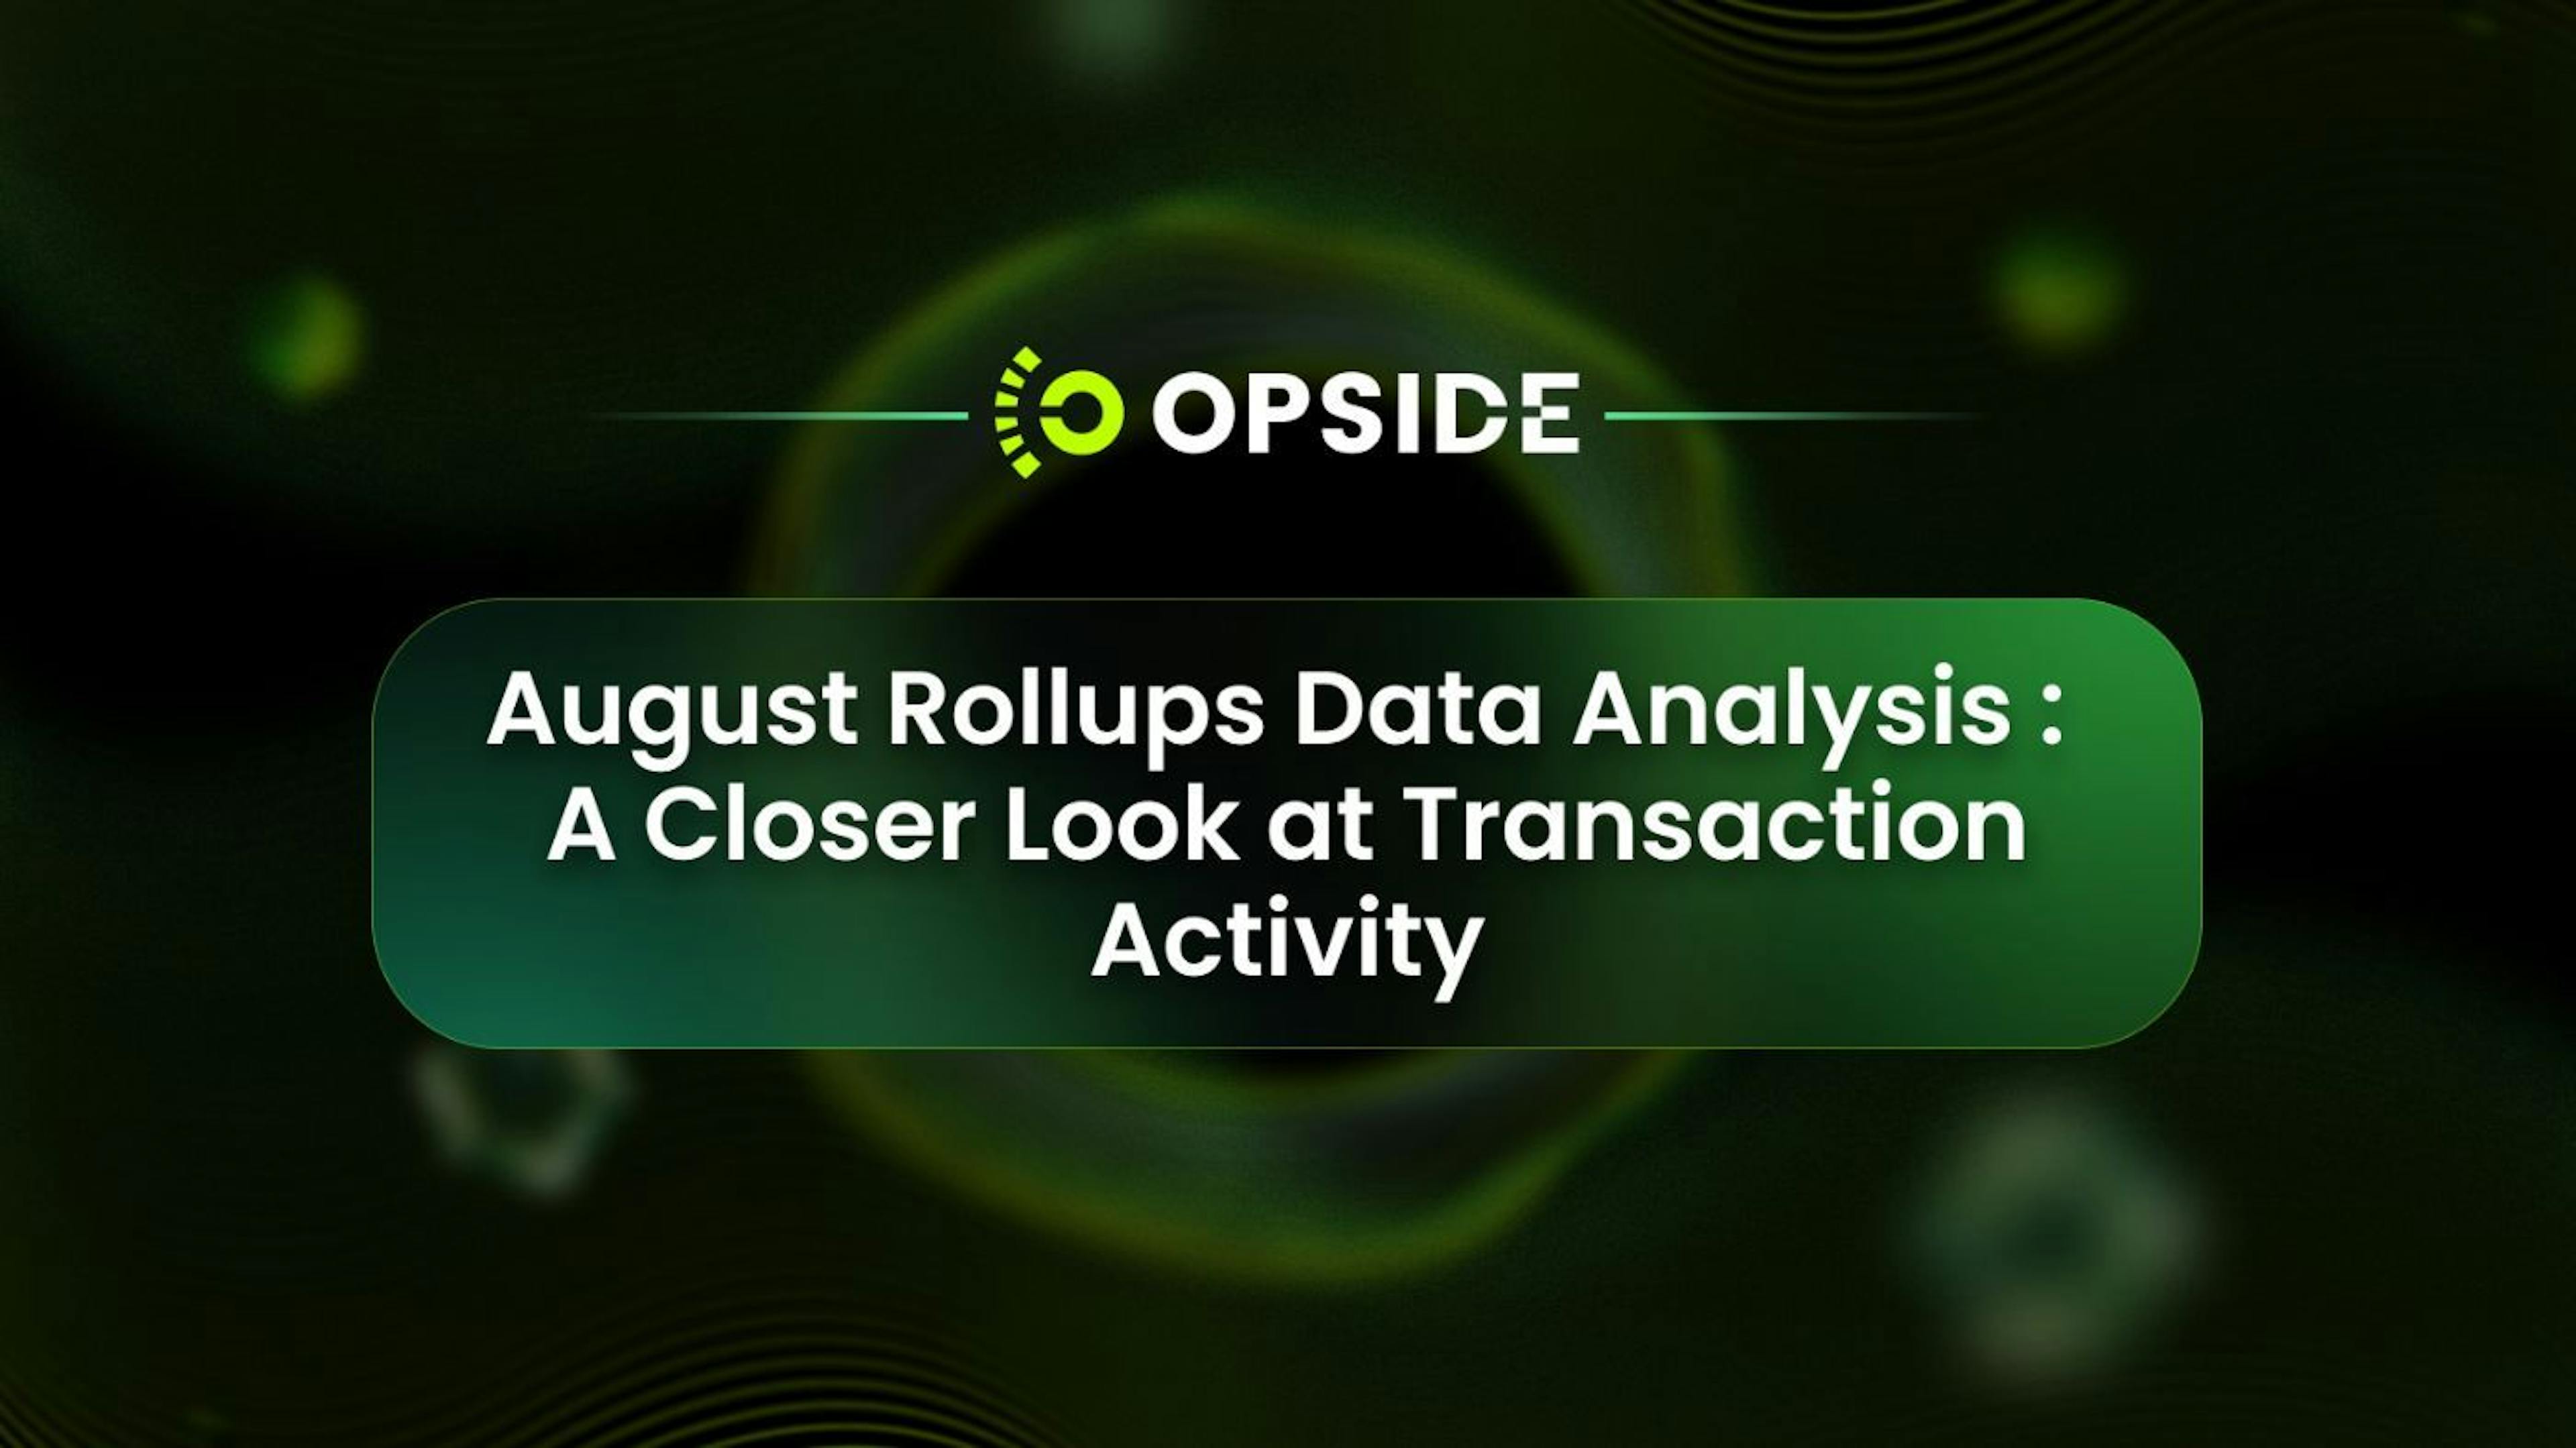 featured image - Análise de dados de rollups de agosto: uma análise mais detalhada da atividade de transação